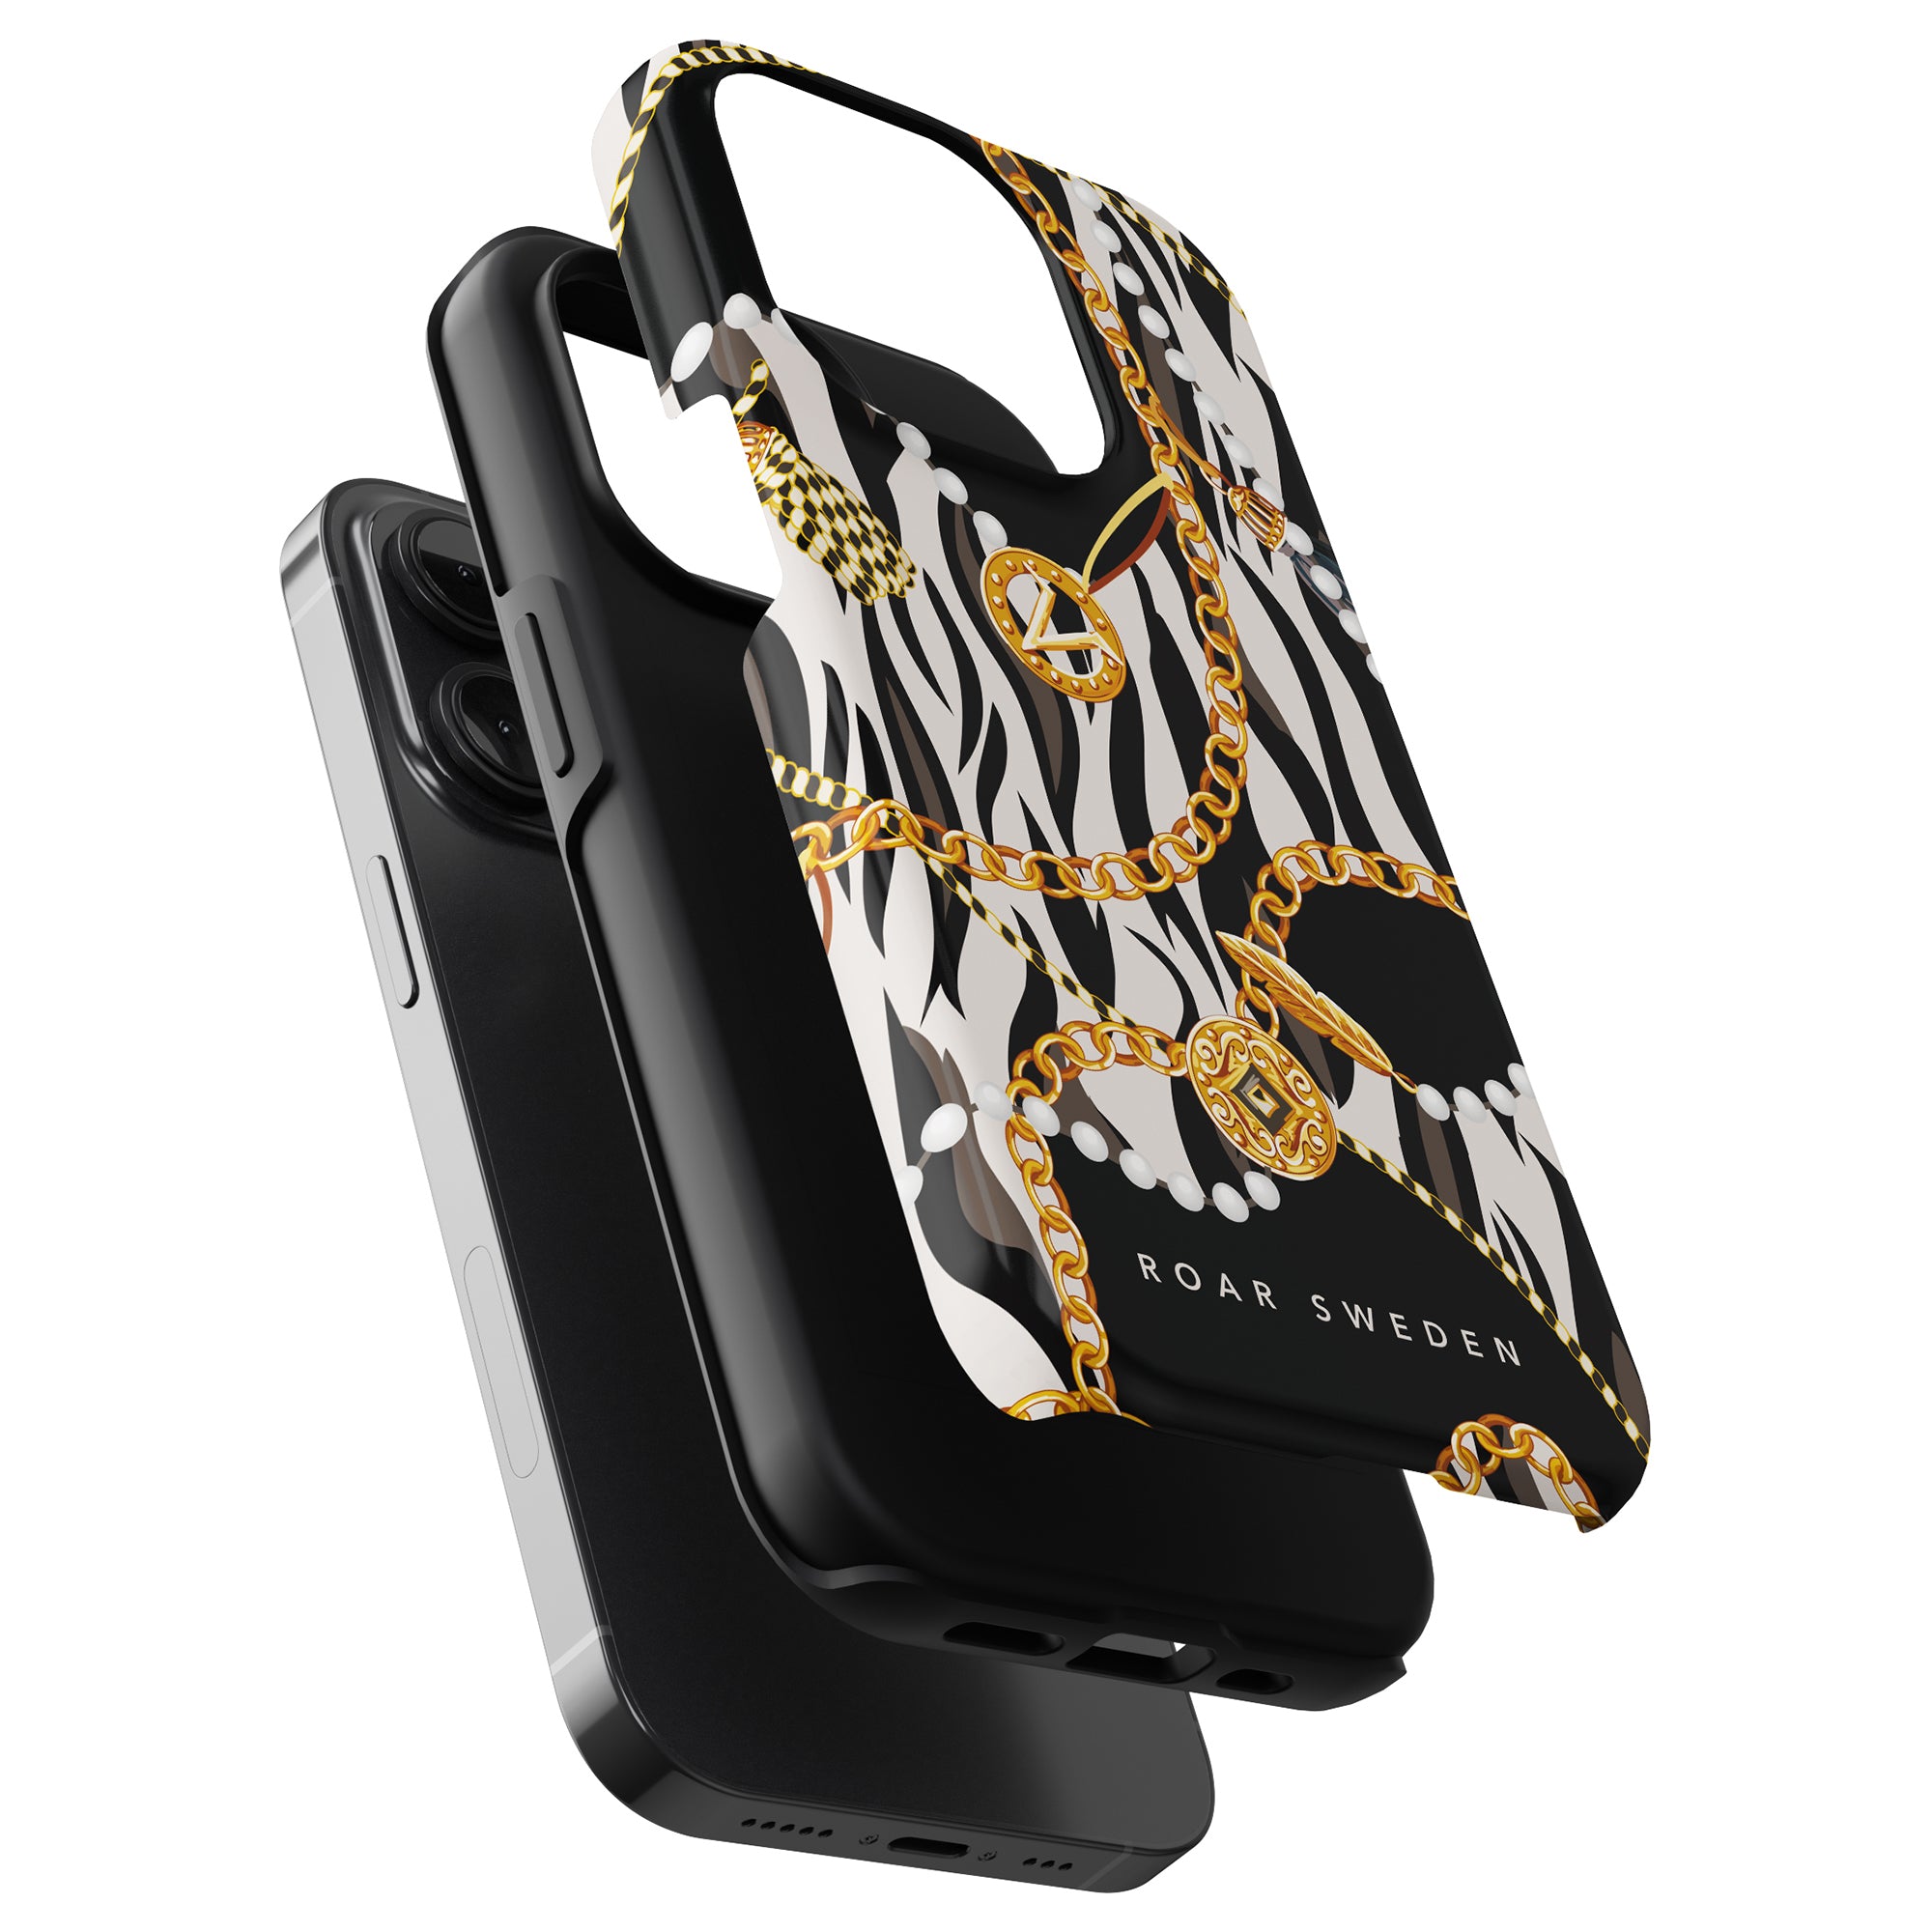 A Roar Swedens Bling - Tufft fodral med en lyxig design med zebratryck för iPhone 11 Pro.